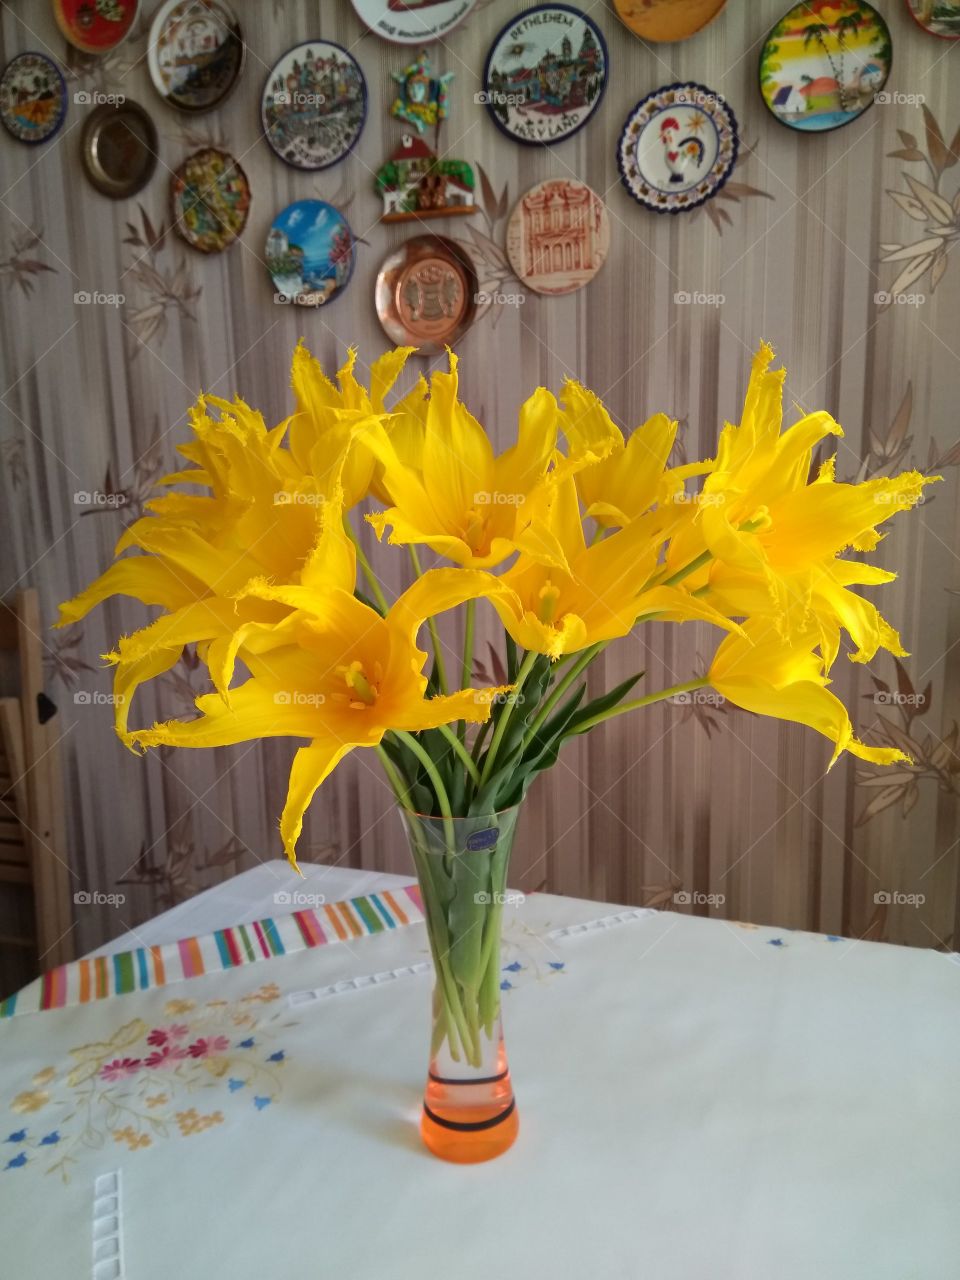 Весенние цветы -желтые тюльпаны. создают настроение.
Spring flowers are yellow tulips. create a mood.